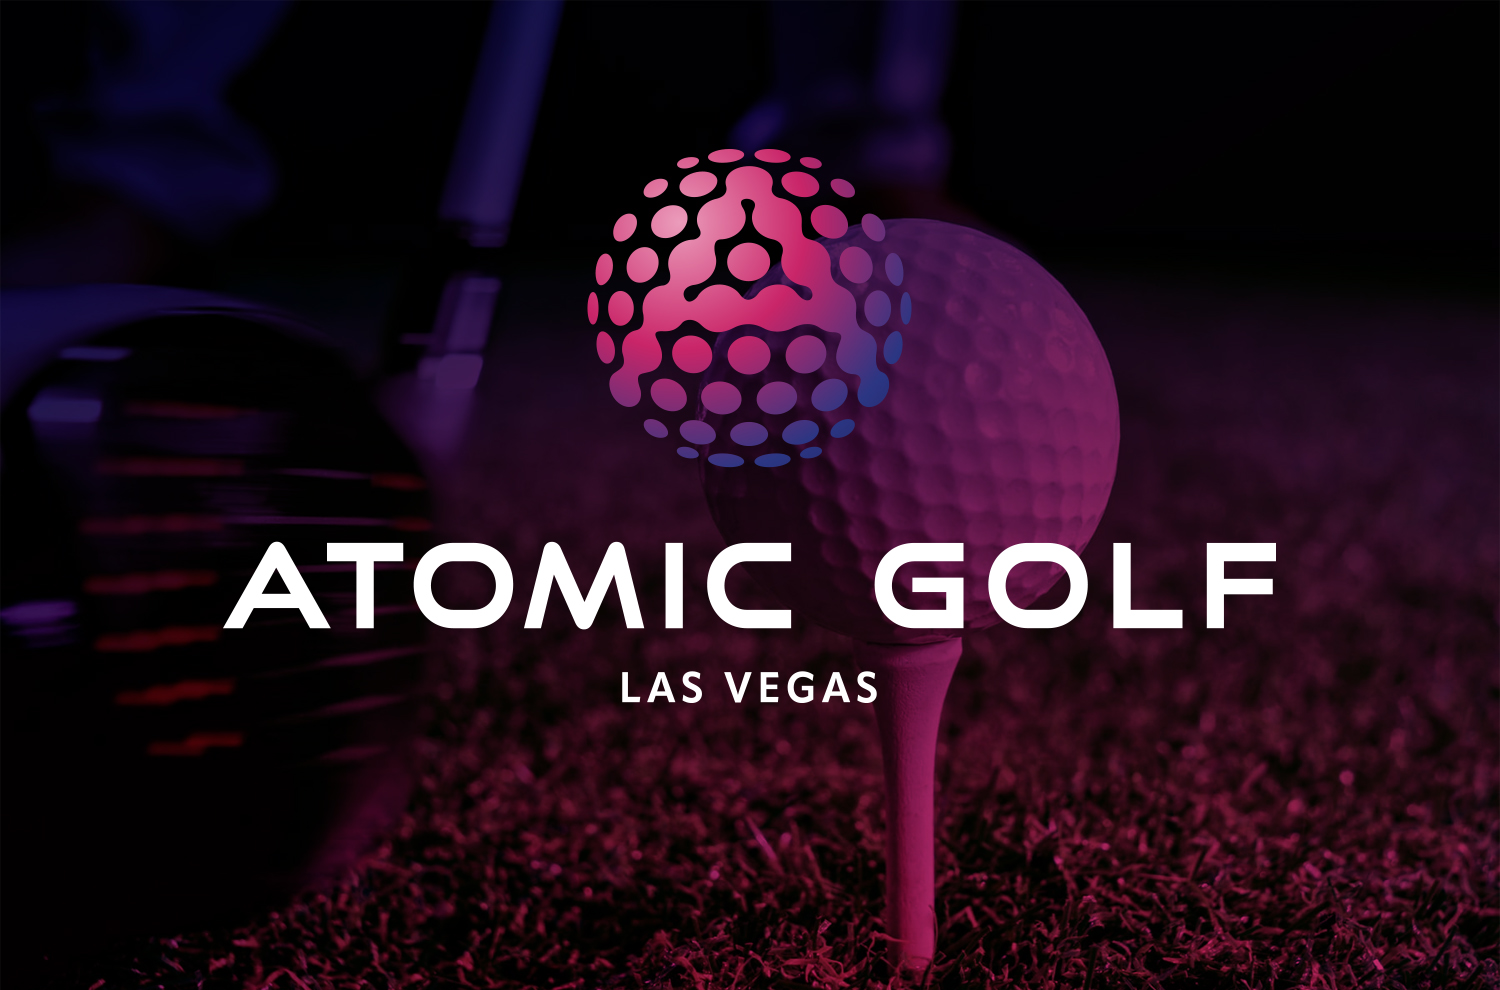 Image of Atomic Golf